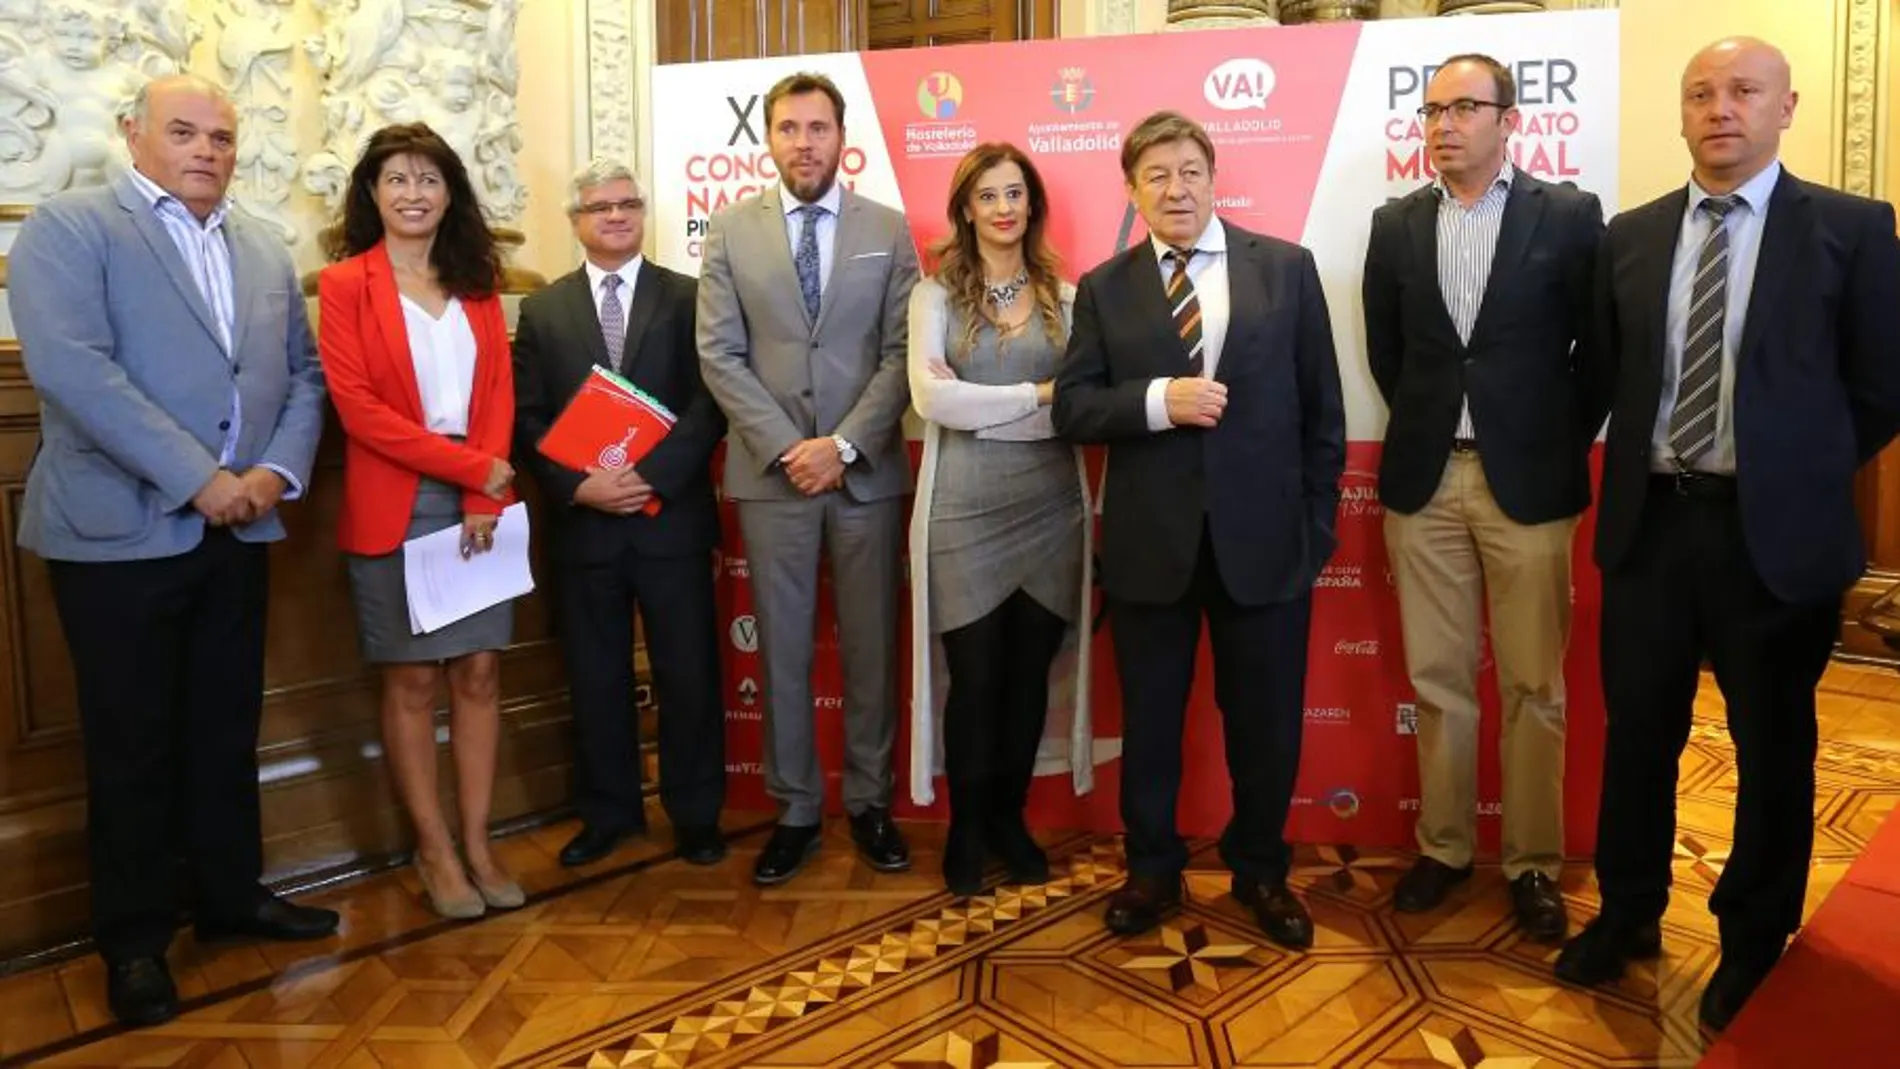 El alcalde de Valladolid, Óscar Puente, junto a Javier Labarga, Ana Redondo, María José Hernández y Luis Cepeda, entre otros, presenta el XIII Concurso Nacional y el I Campeonato Mundial de Tapas